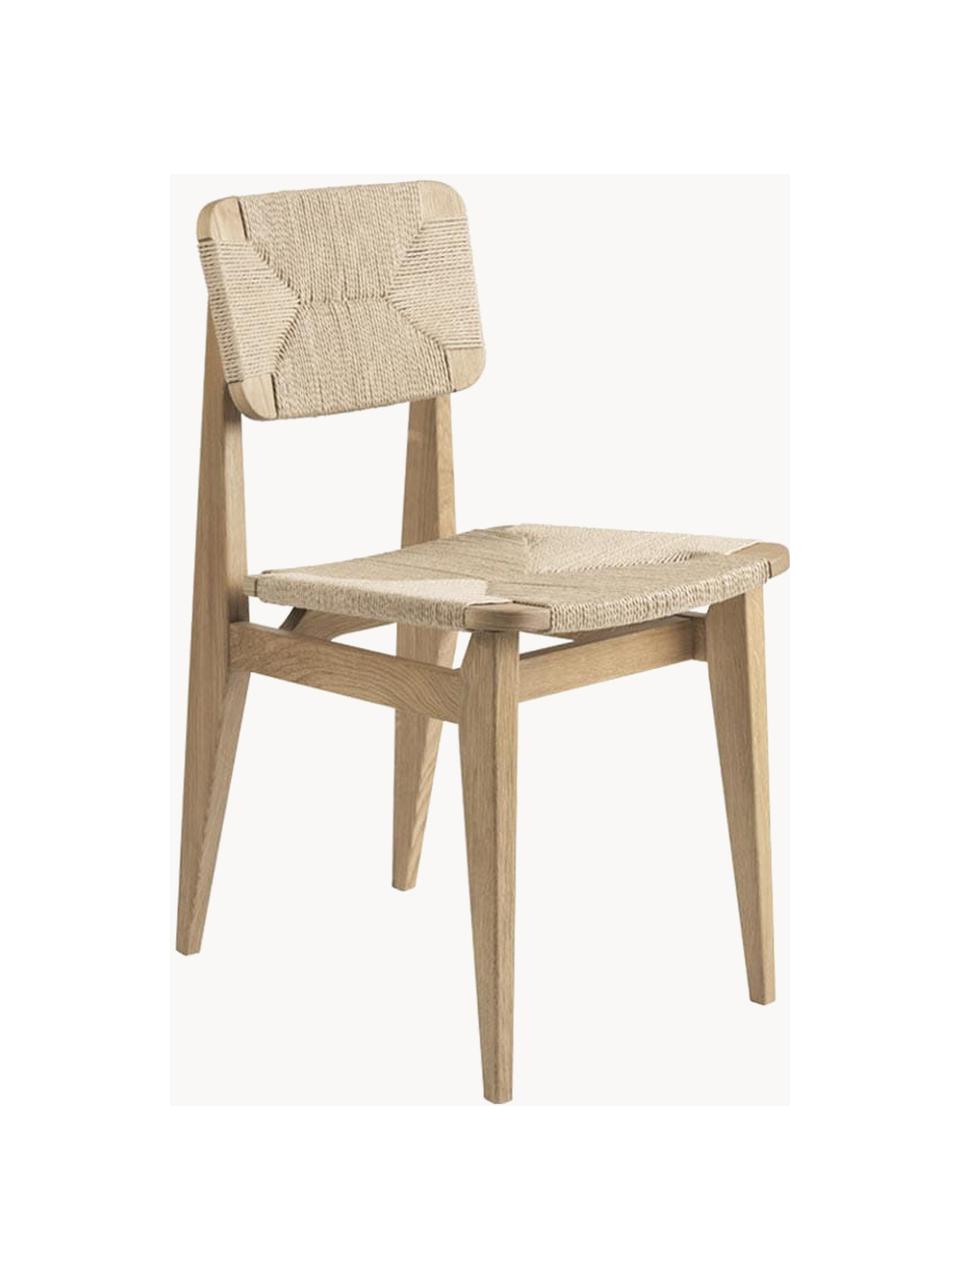 Holzstuhl C-Chair aus Eichenholz mit geflochtener Sitzfläche, Gestell: Eichenholz, geölt, Eichenholz, Hellbeige, B 41 x T 53 cm